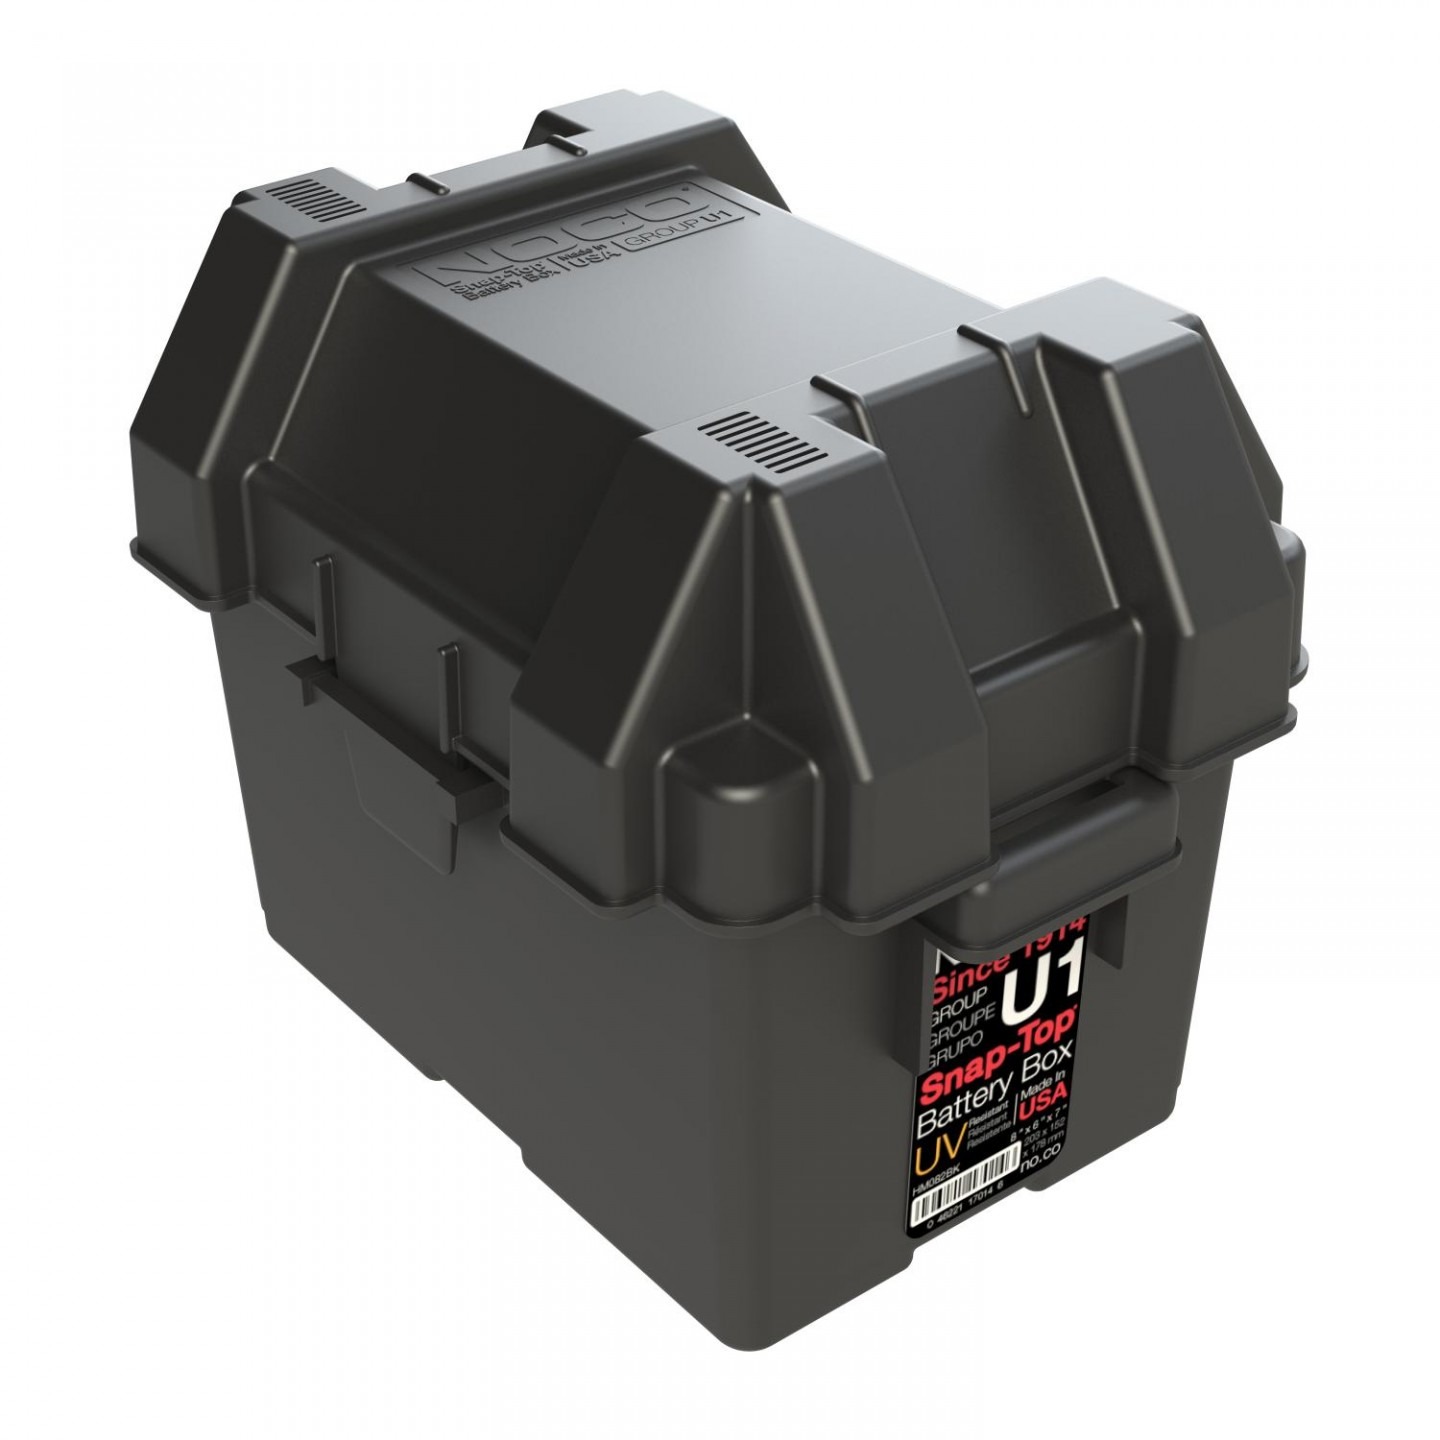 HM082-12V-U1-Battery-Box-Storage-PT01_1.jpg